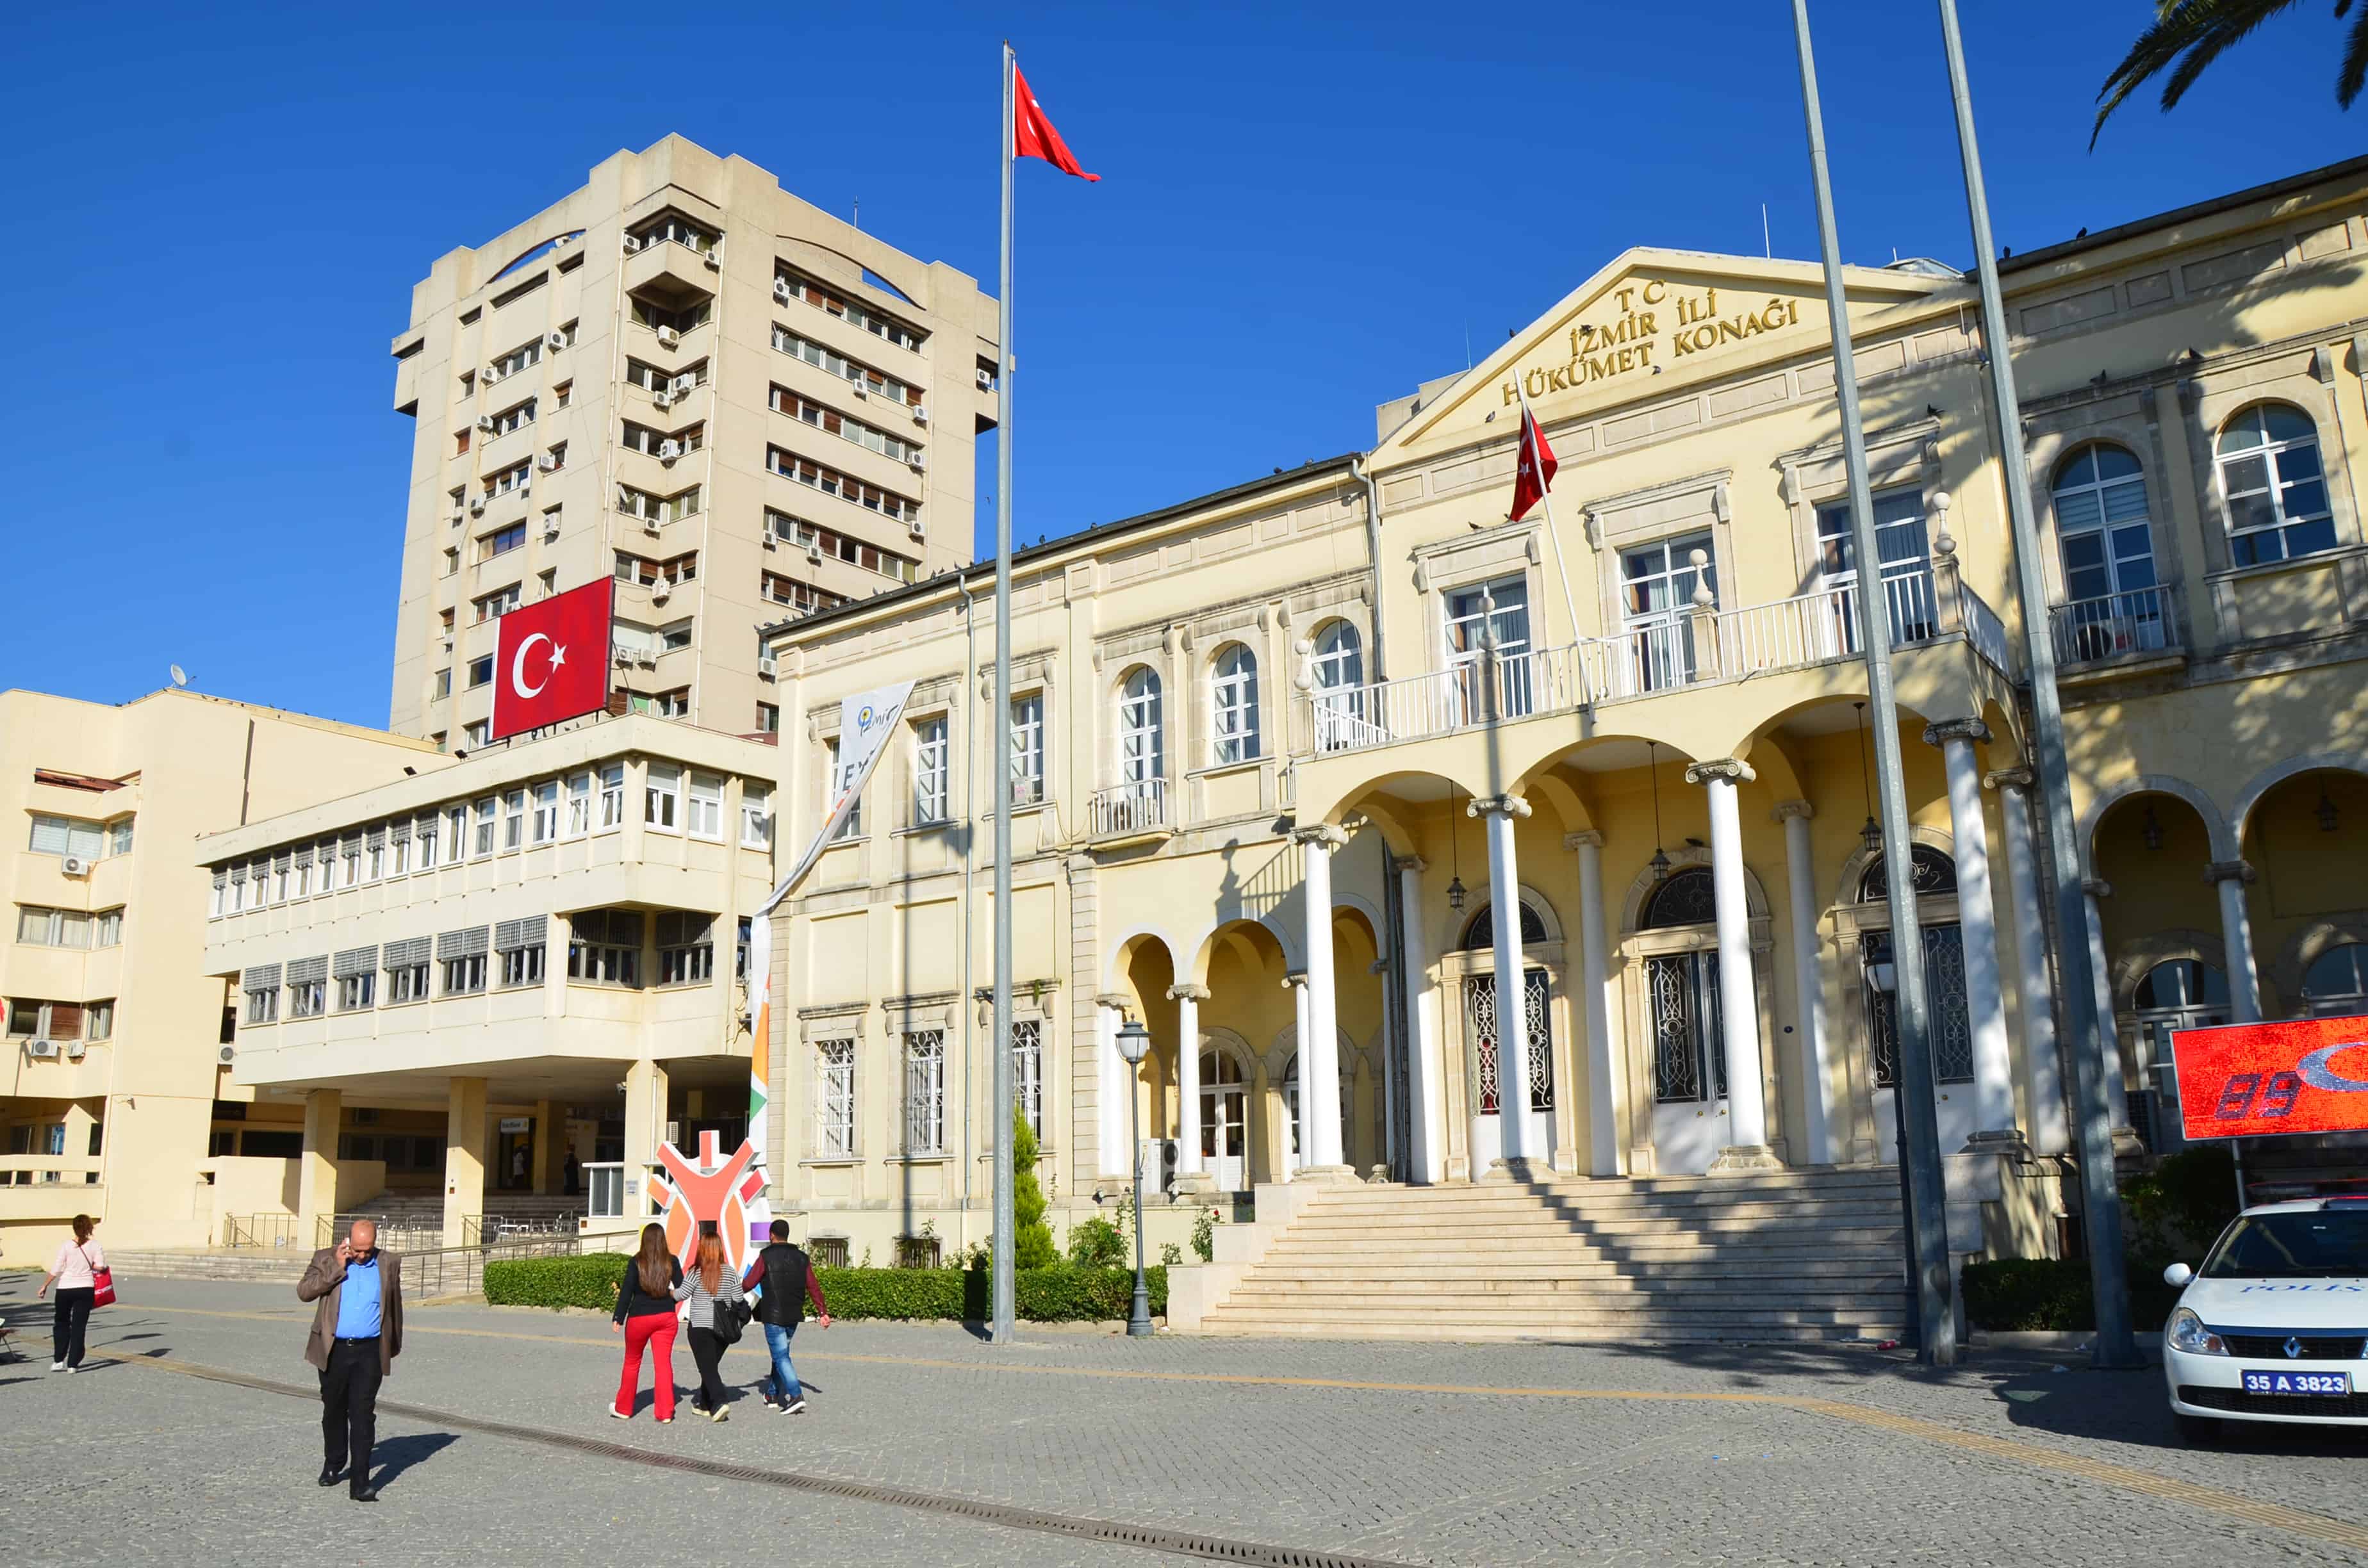 Hükümet Konağı in Izmir, Turkey